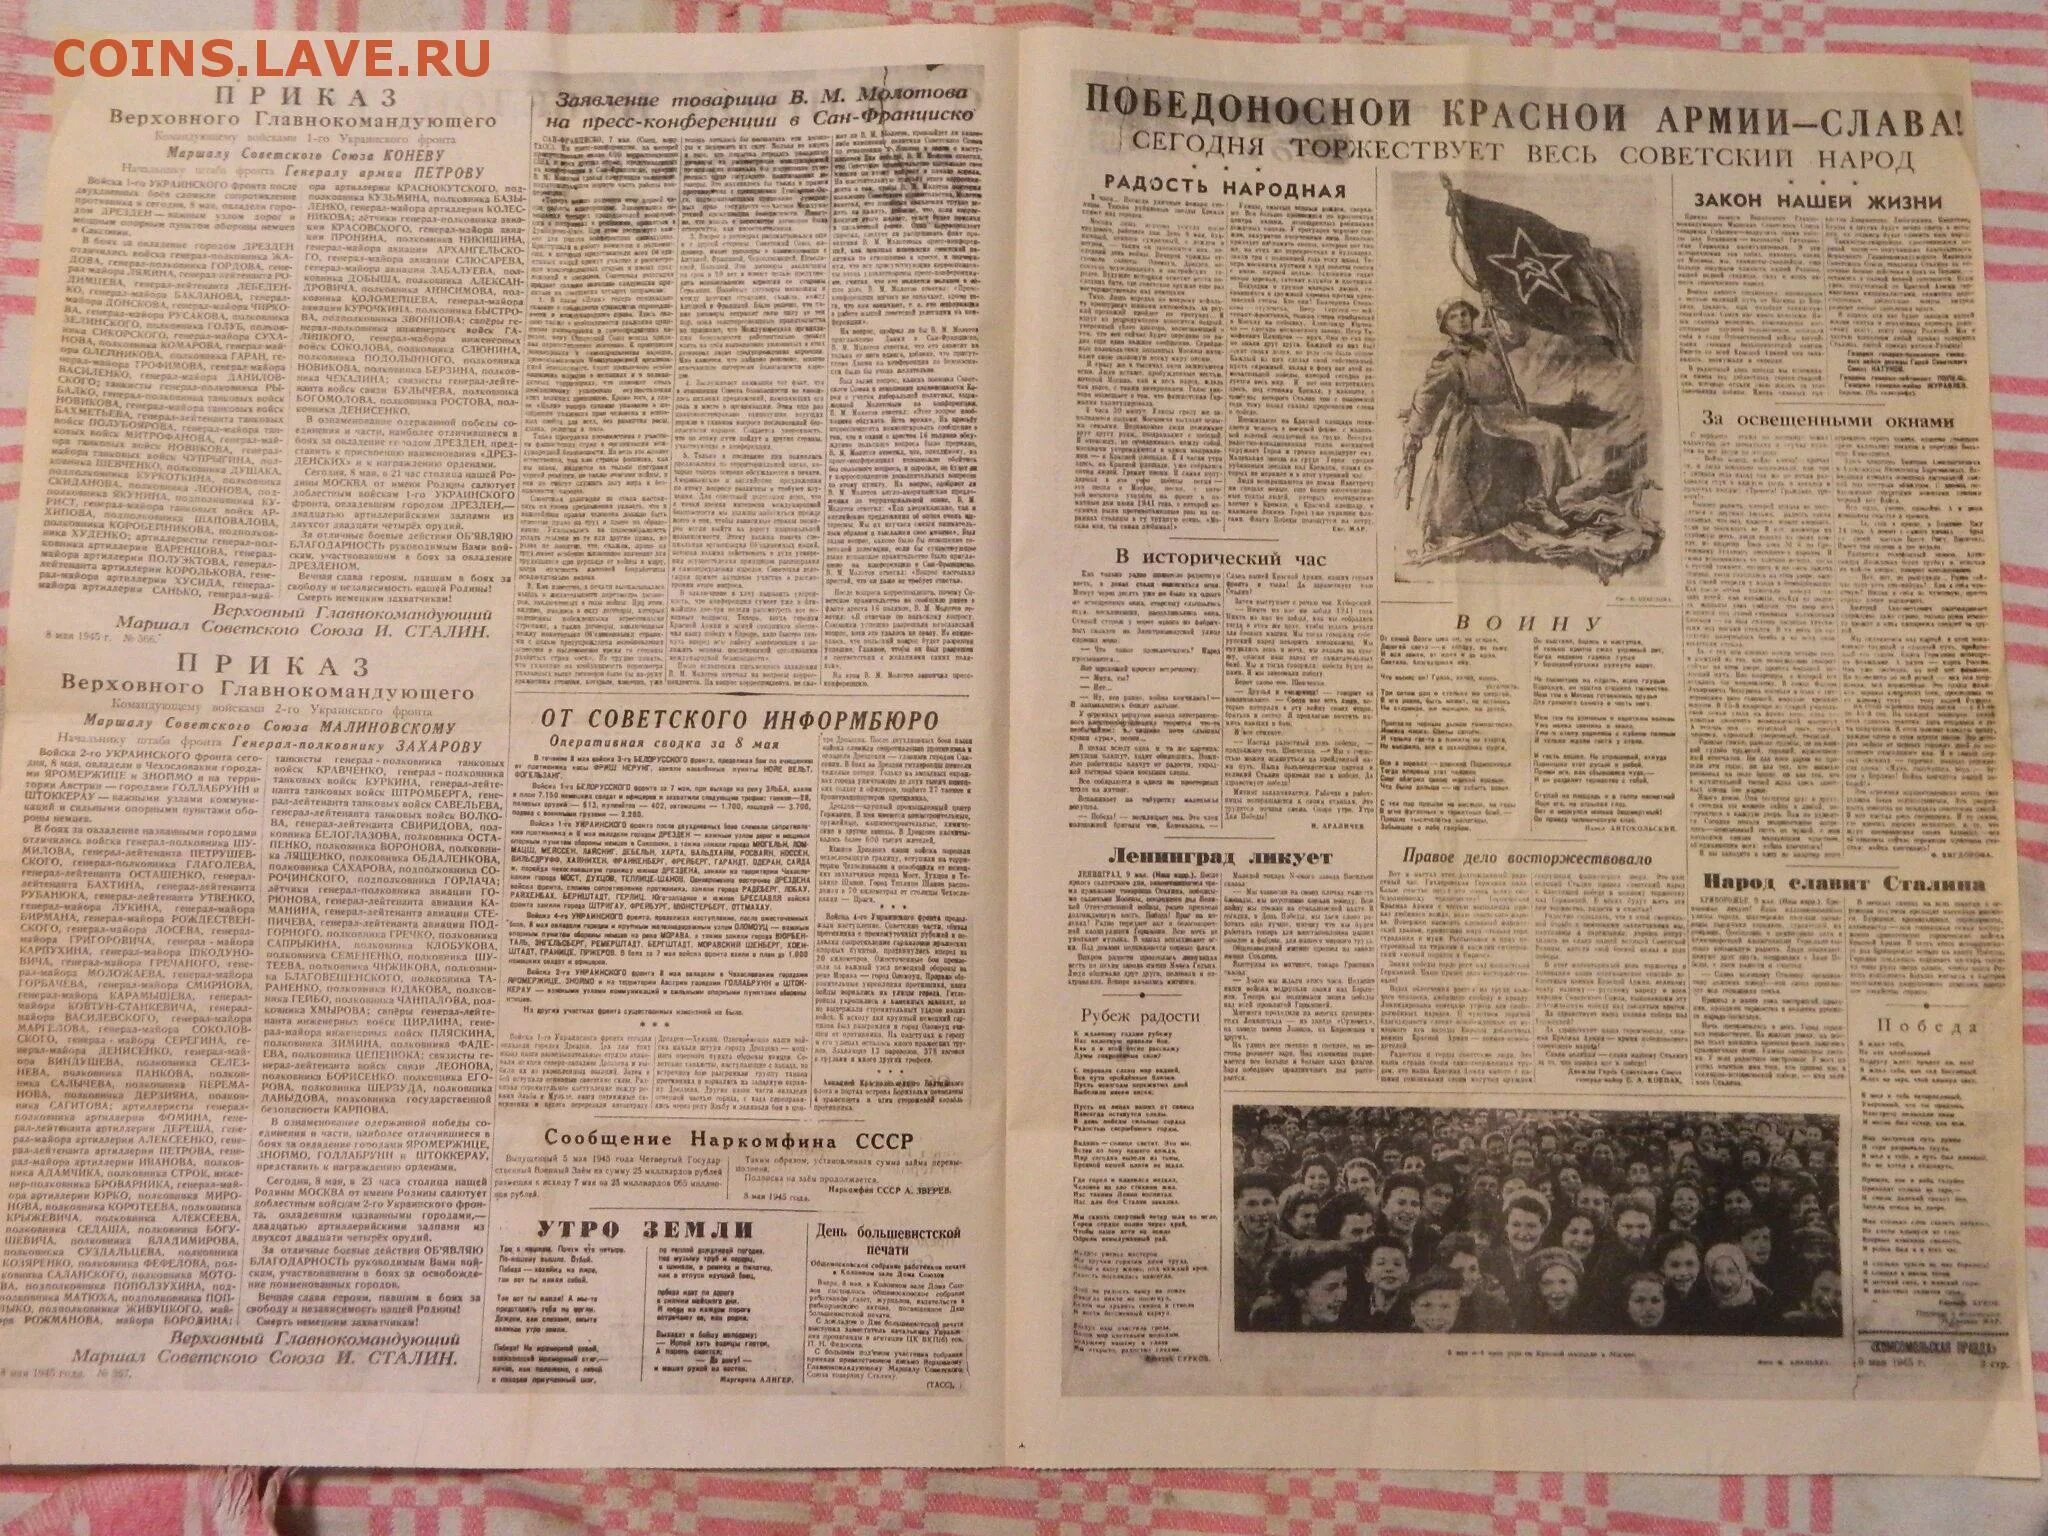 Newspaper 9. Комсомольская правда 9 мая 1945. Газета Комсомольская правда 9 мая 1945 года. Газета правда 9 мая 1945 года. Комсомольская правда от 9 мая 1945 года.